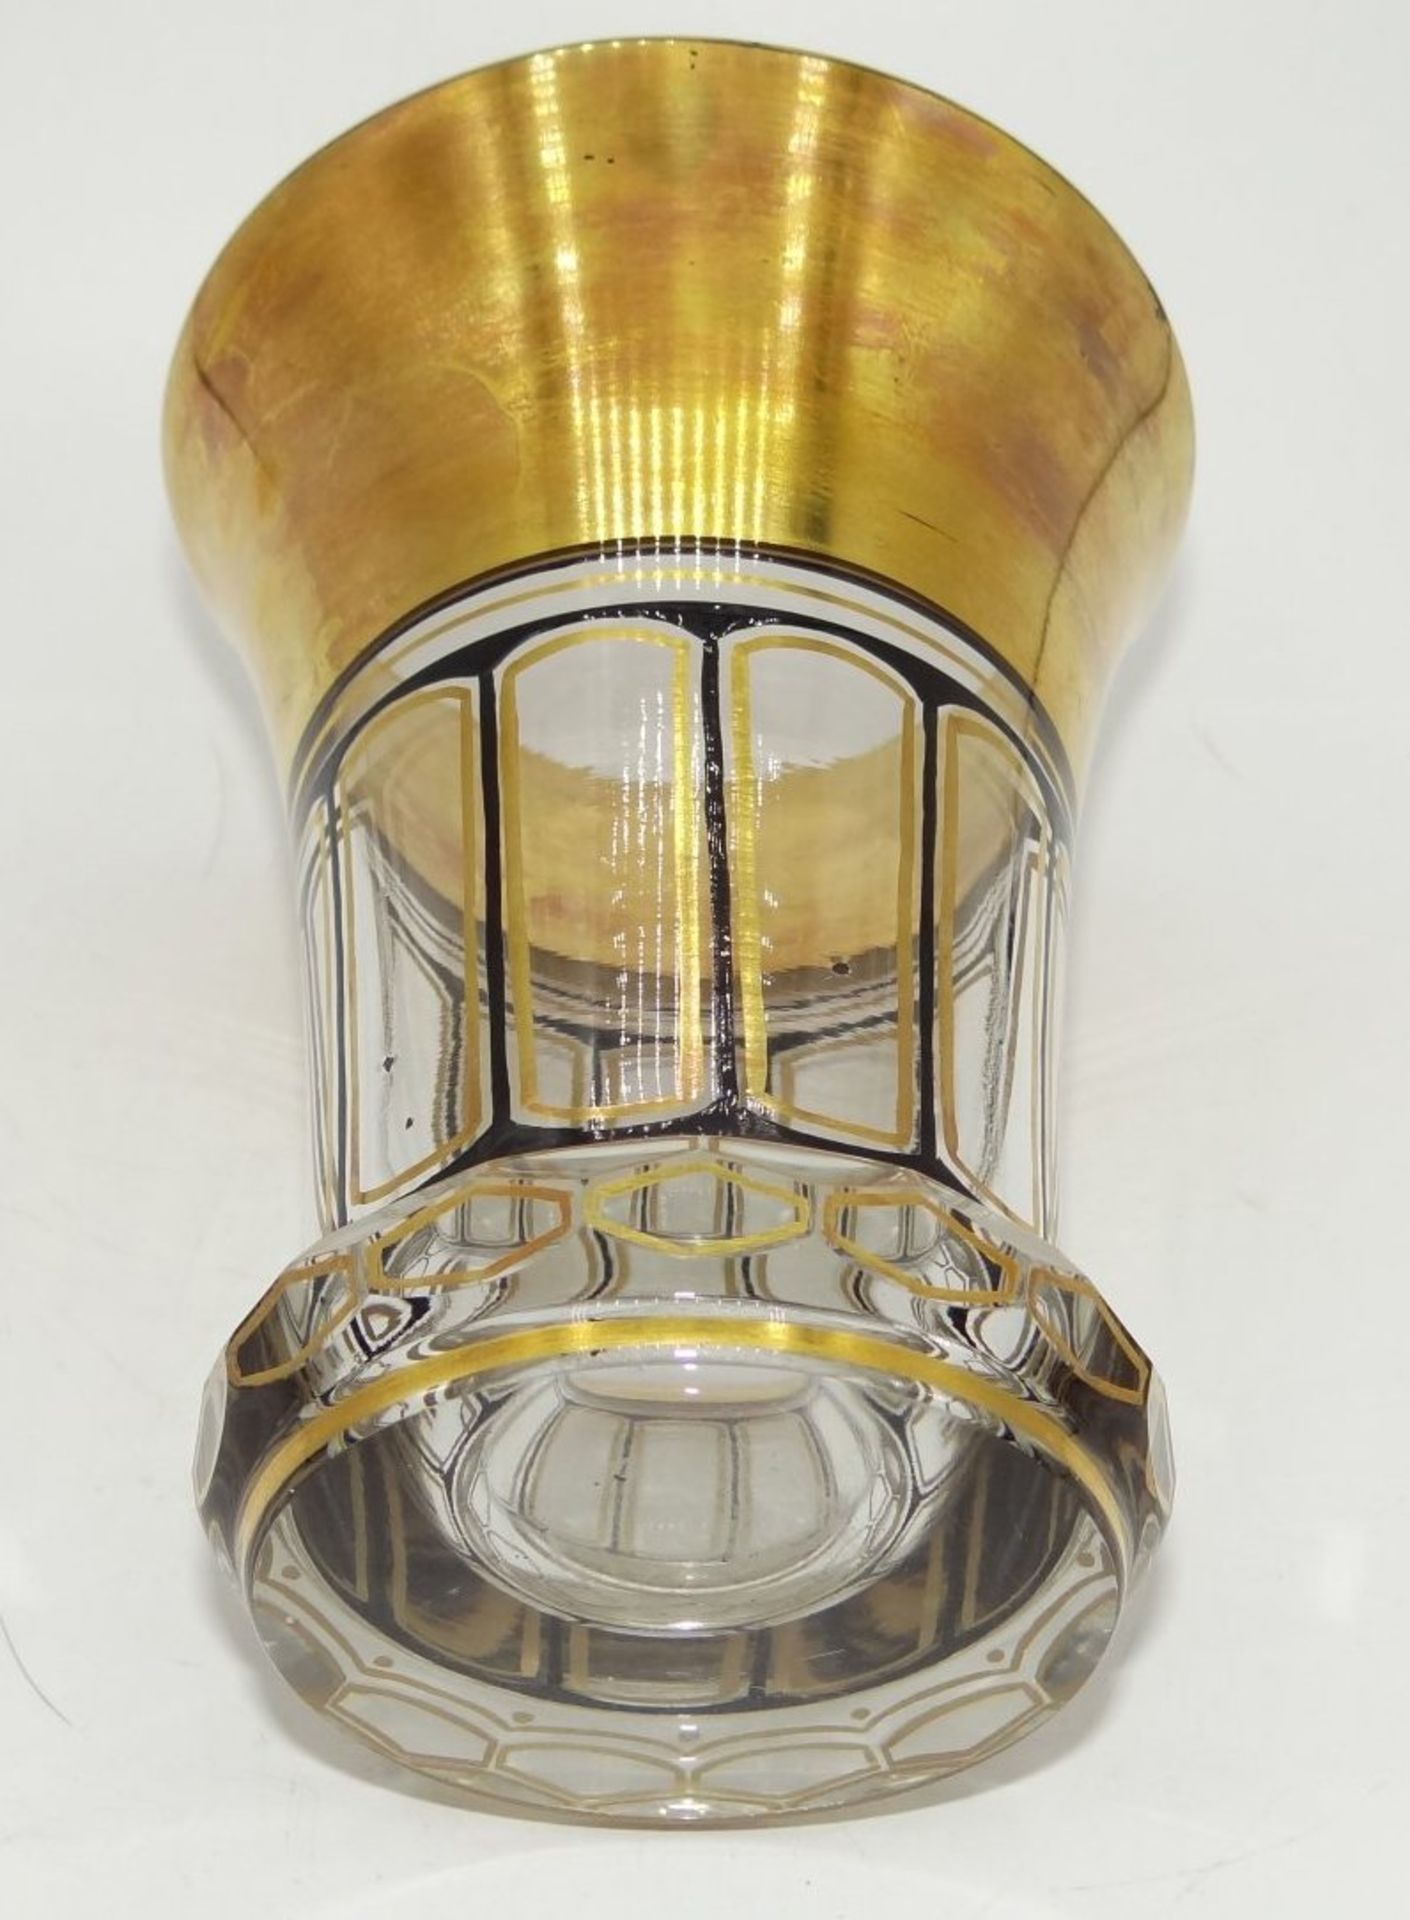 Fussbecher mit Goldstaffage, H-12 cm, D-9 cm, Alters-u. Gebrauchsspuren - Bild 4 aus 4